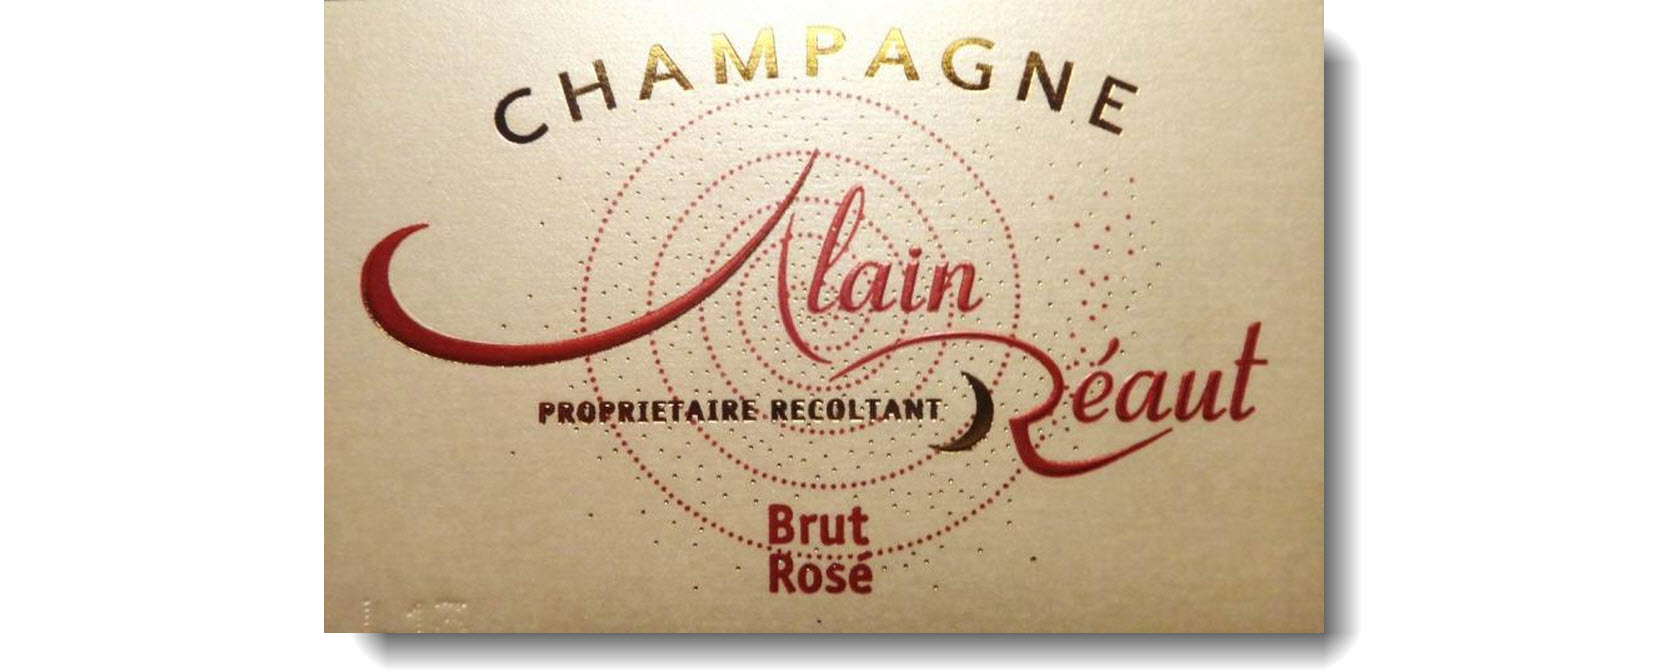 Champagne Alain Réaut